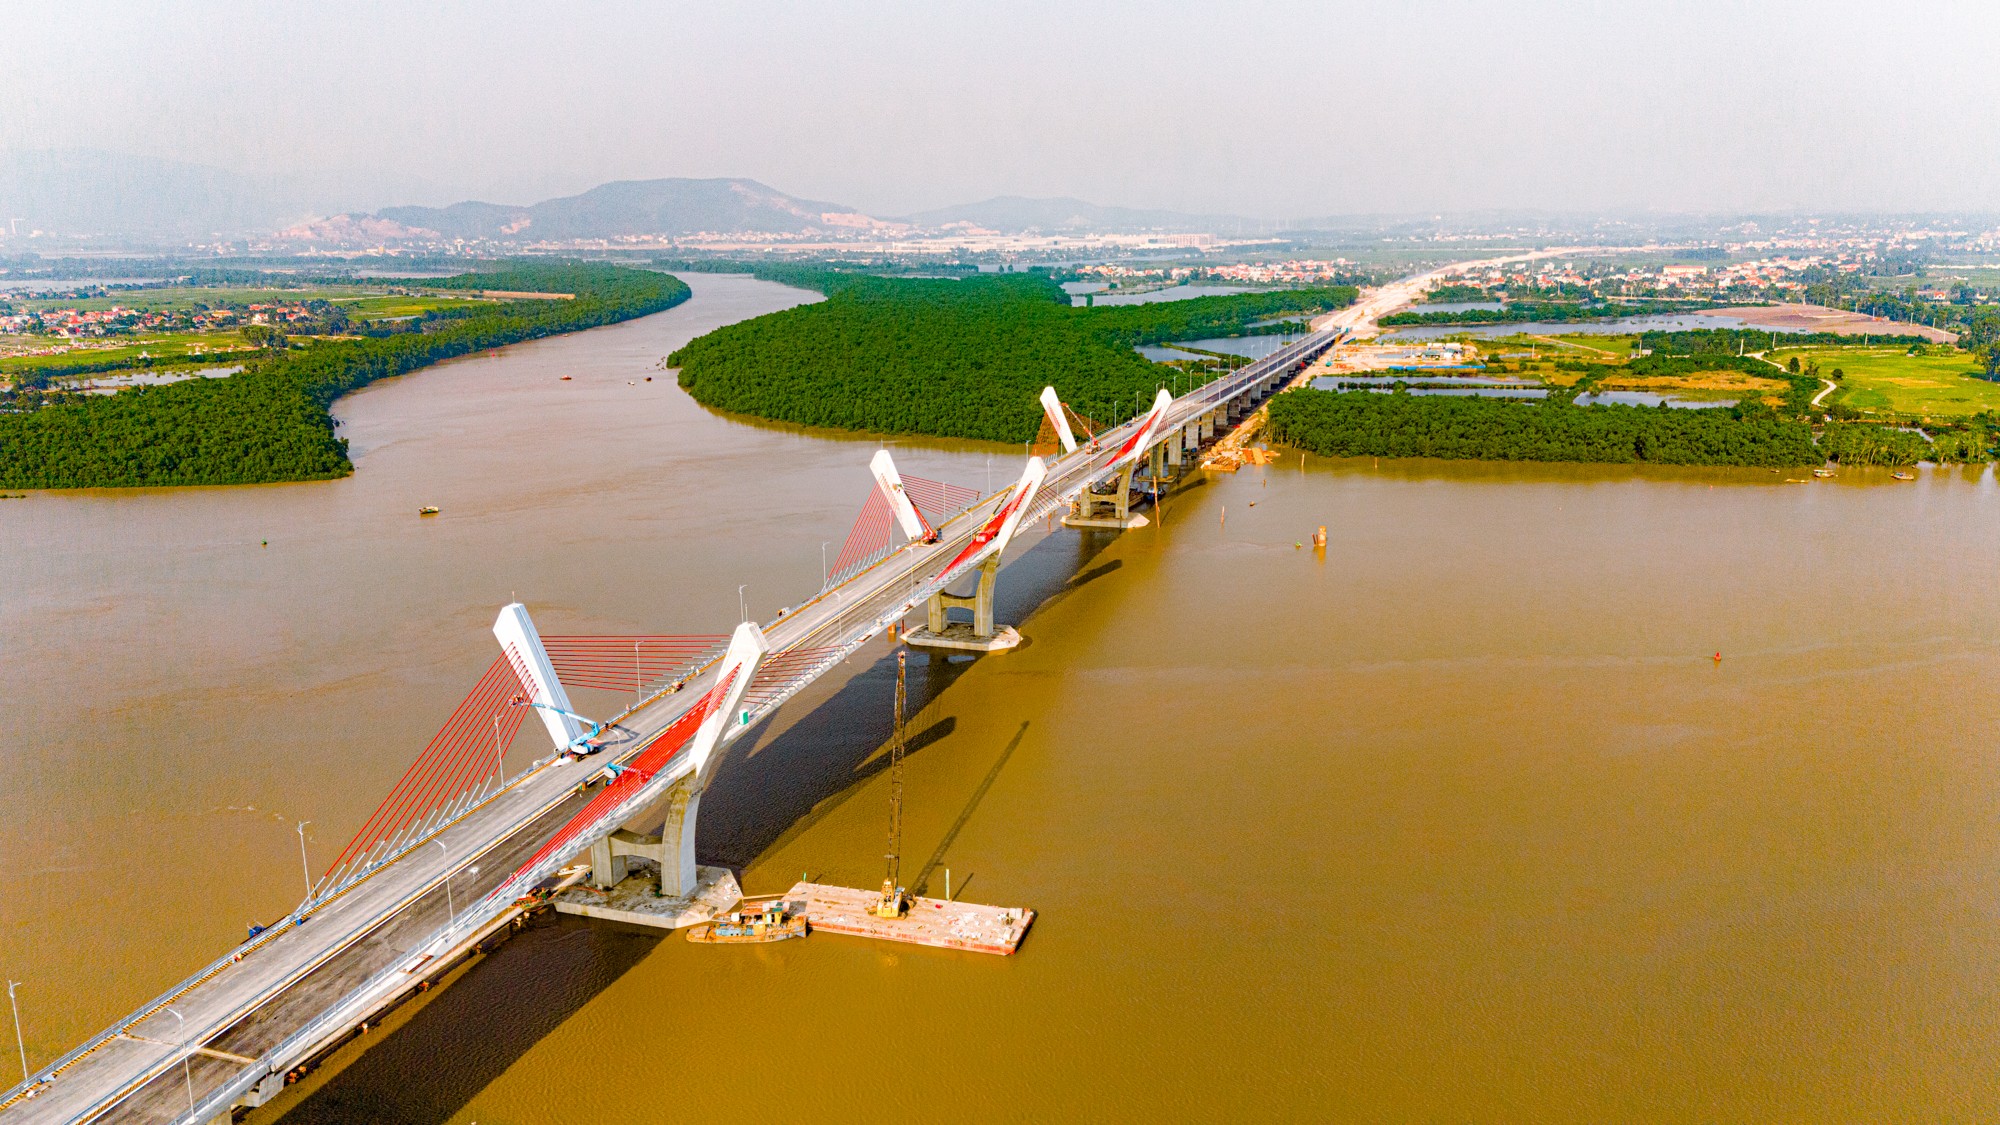 Toàn cảnh khu vực được xây cây cầu trị giá 2.000 tỷ sắp hoàn thành, kết nối Hải Phòng và Quảng Ninh, đưa tuyến phà sông lớn nhất miền Bắc về “nghỉ hưu”.- Ảnh 7.